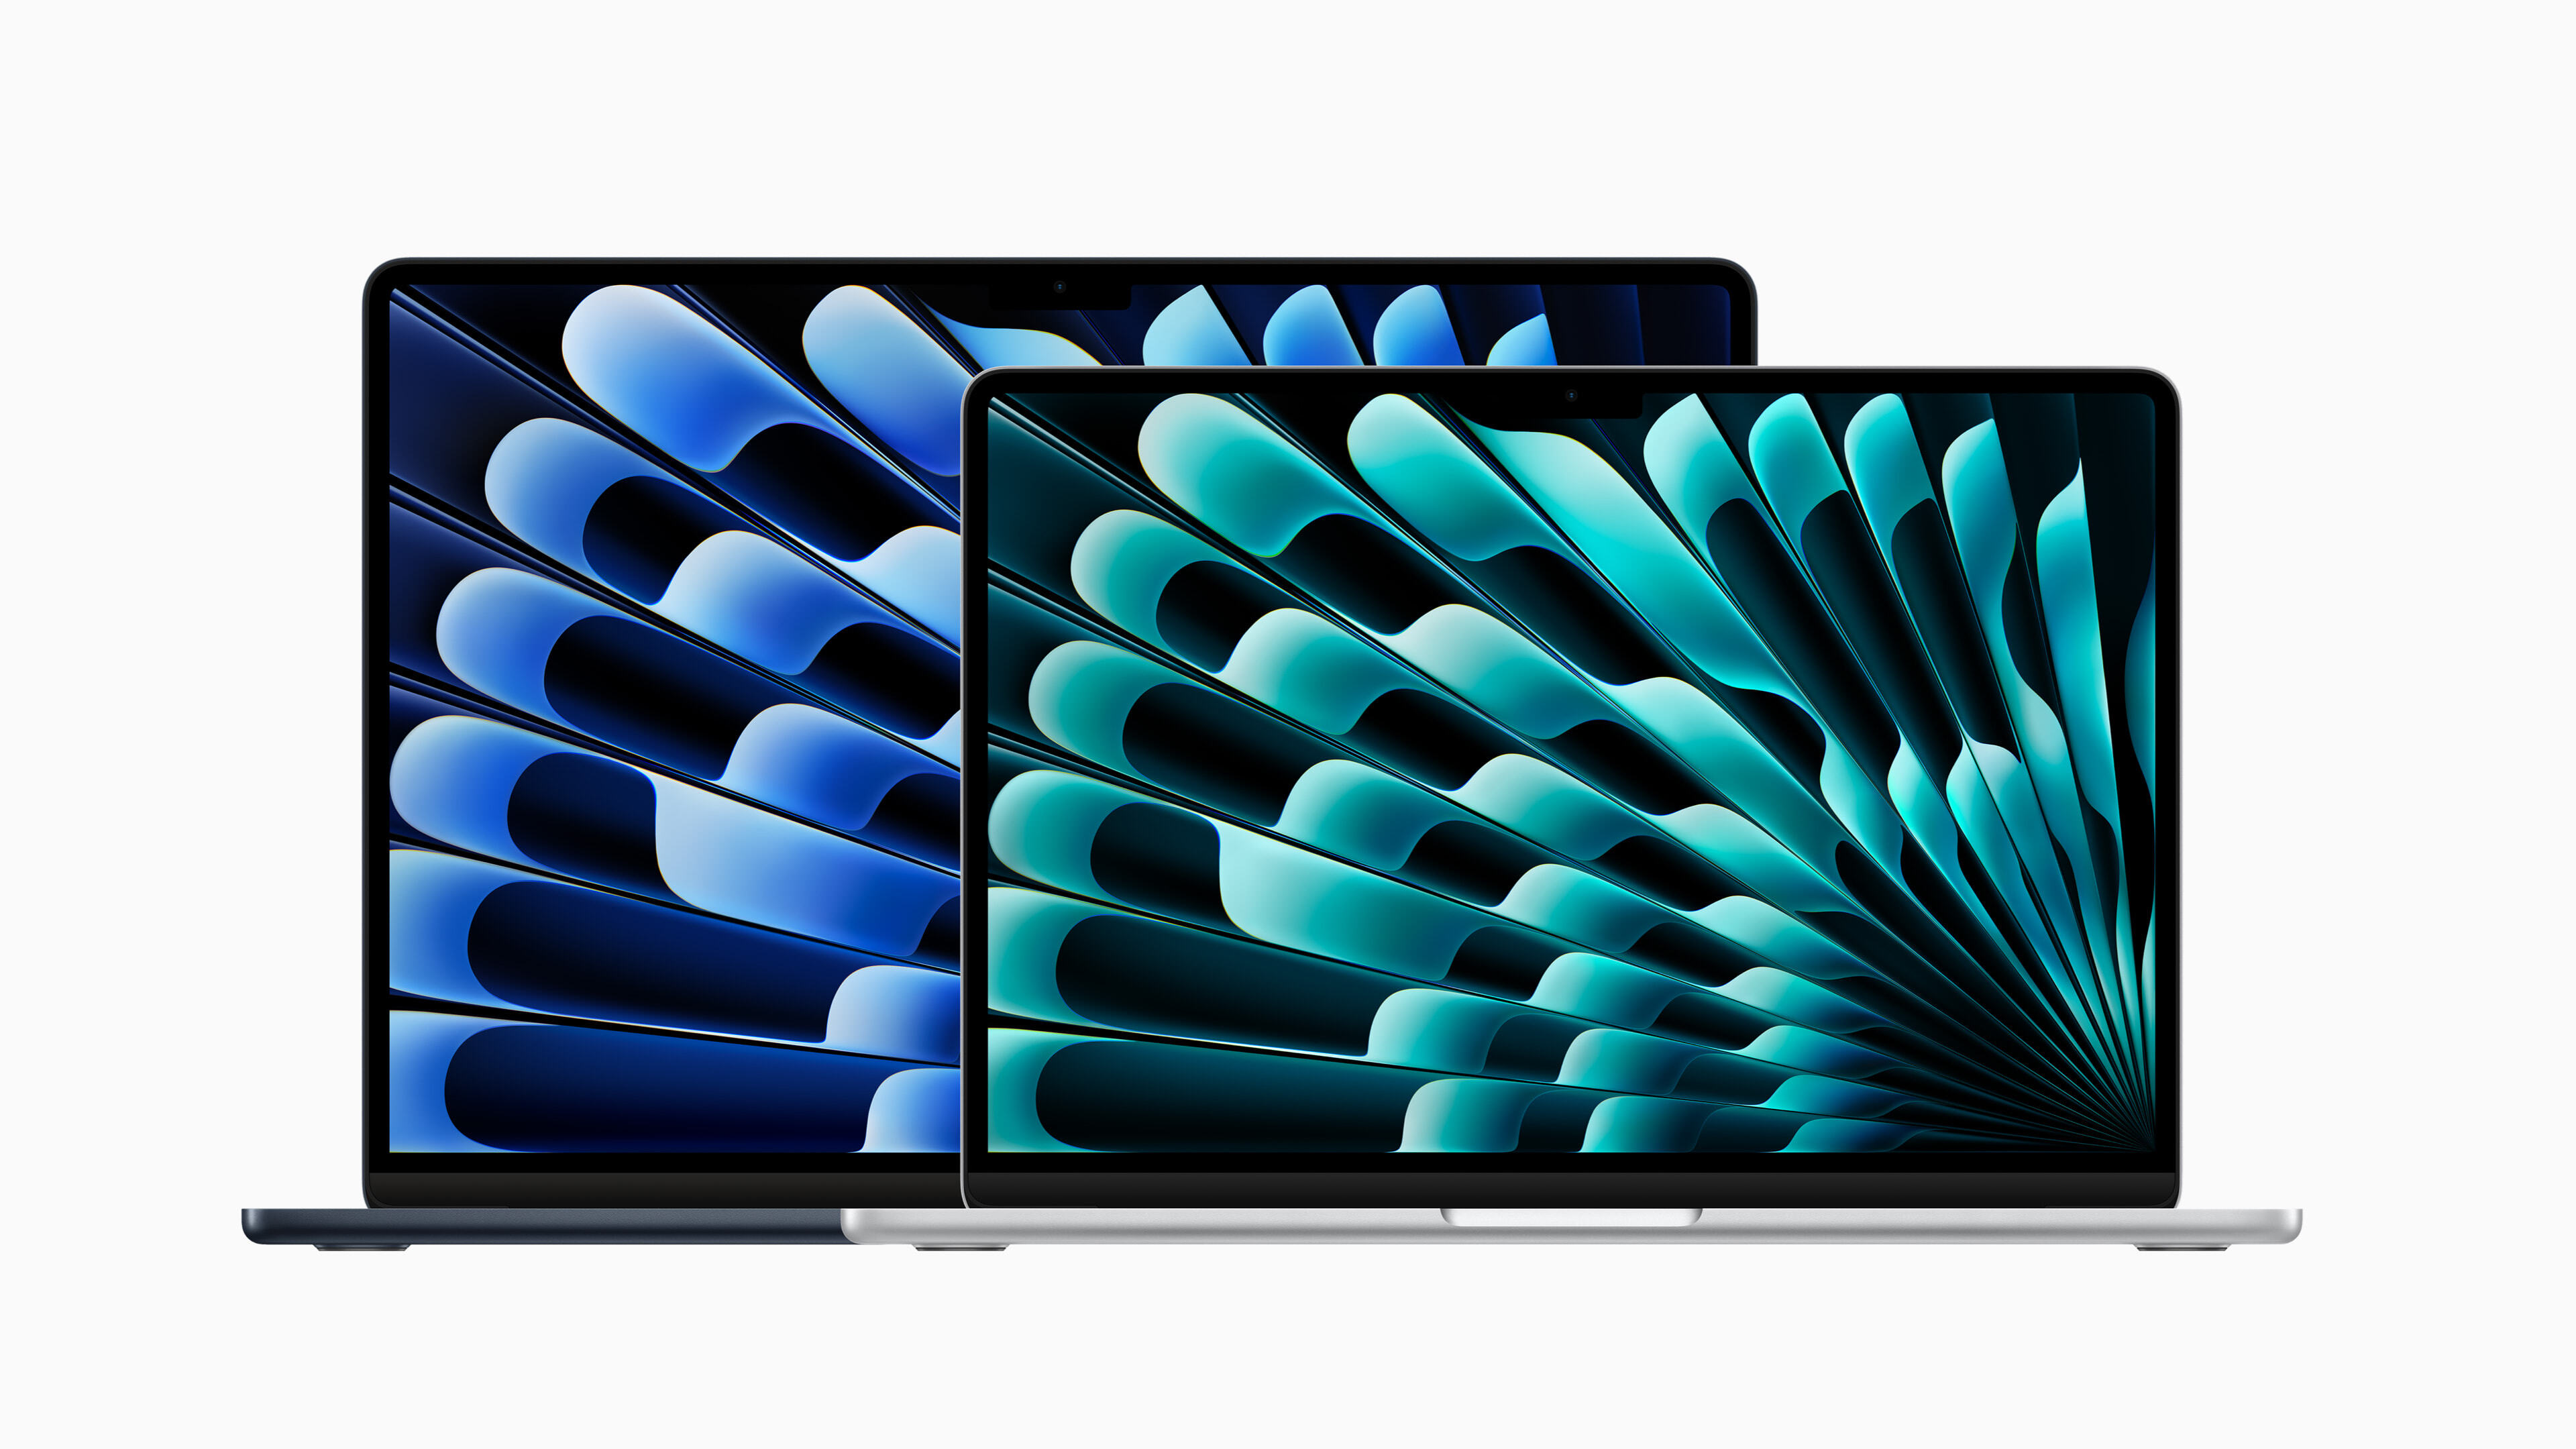 備有兩種完美尺寸，13 吋 MacBook Air 提供極致的行動力，15 吋機型則以纖薄輕巧的設計提供更多螢幕領域進行多工處理。